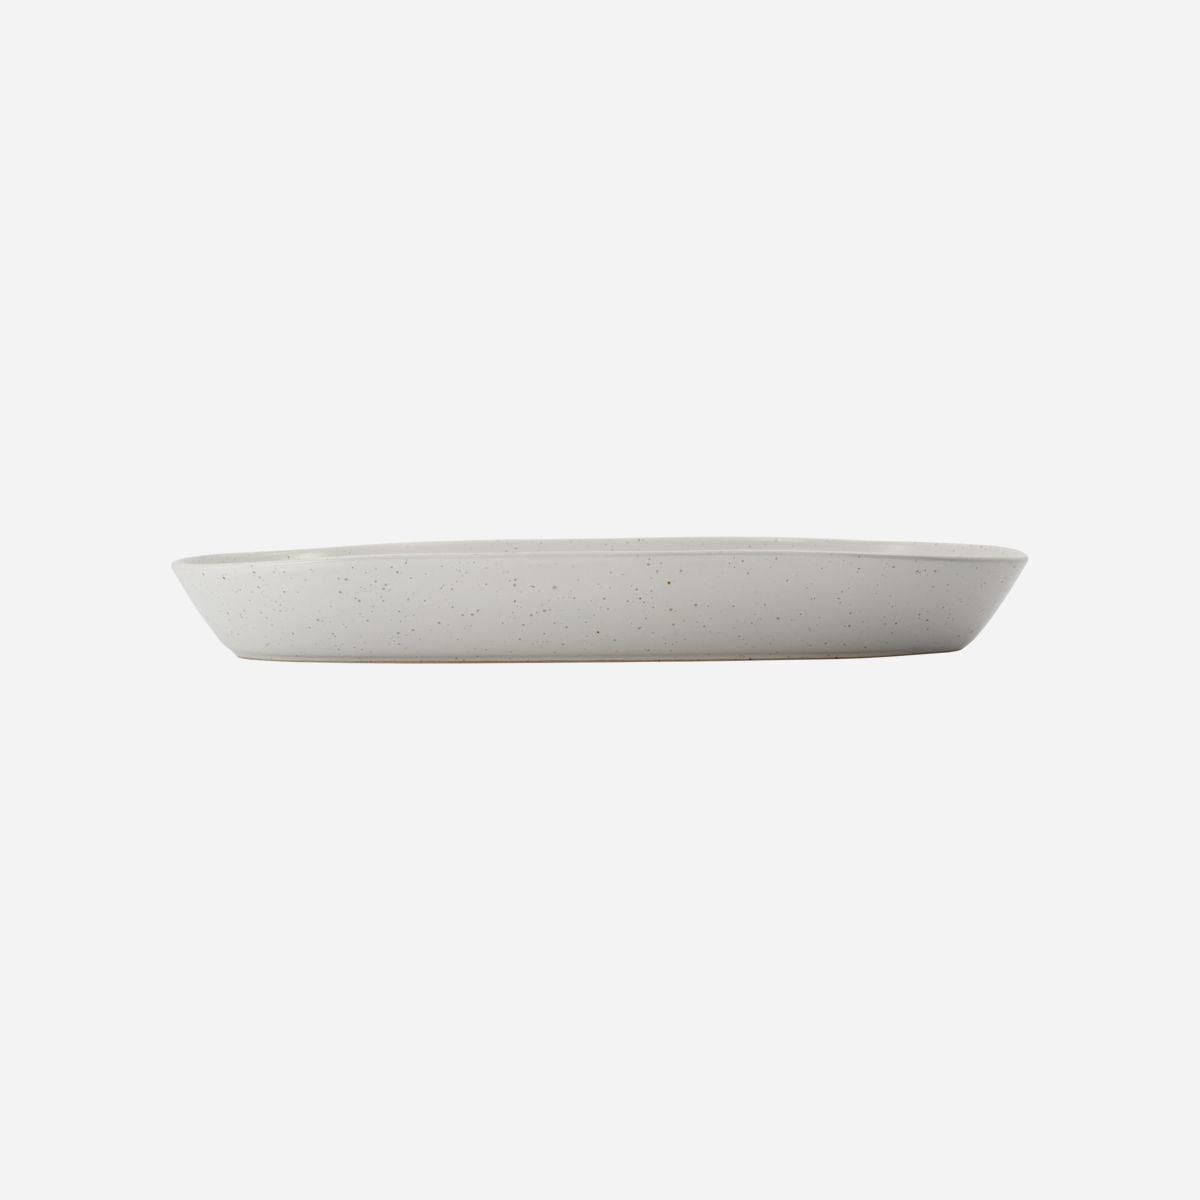 Serveringsfad, Pion, L 38 cm, grå/hvid